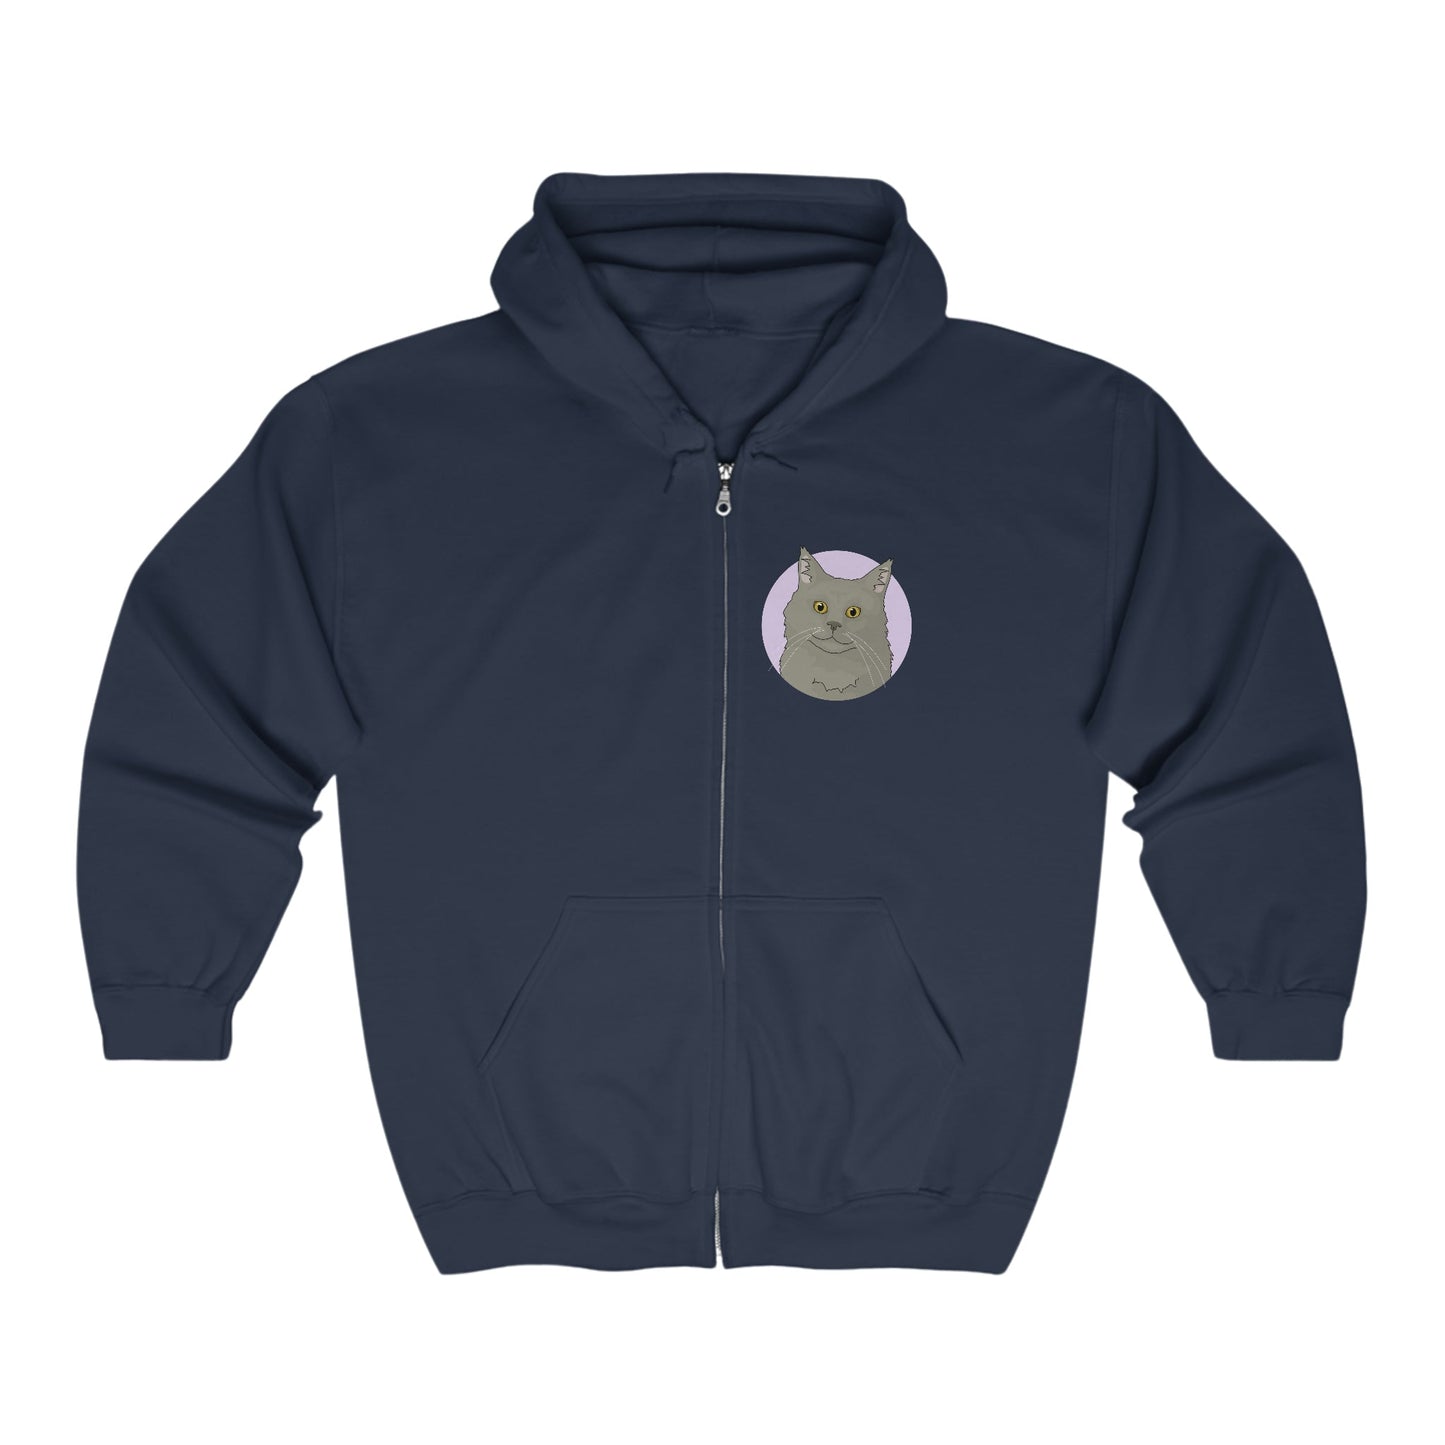 Maine Coon | Zip-up Sweatshirt - Detezi Designs-21182201785805012263